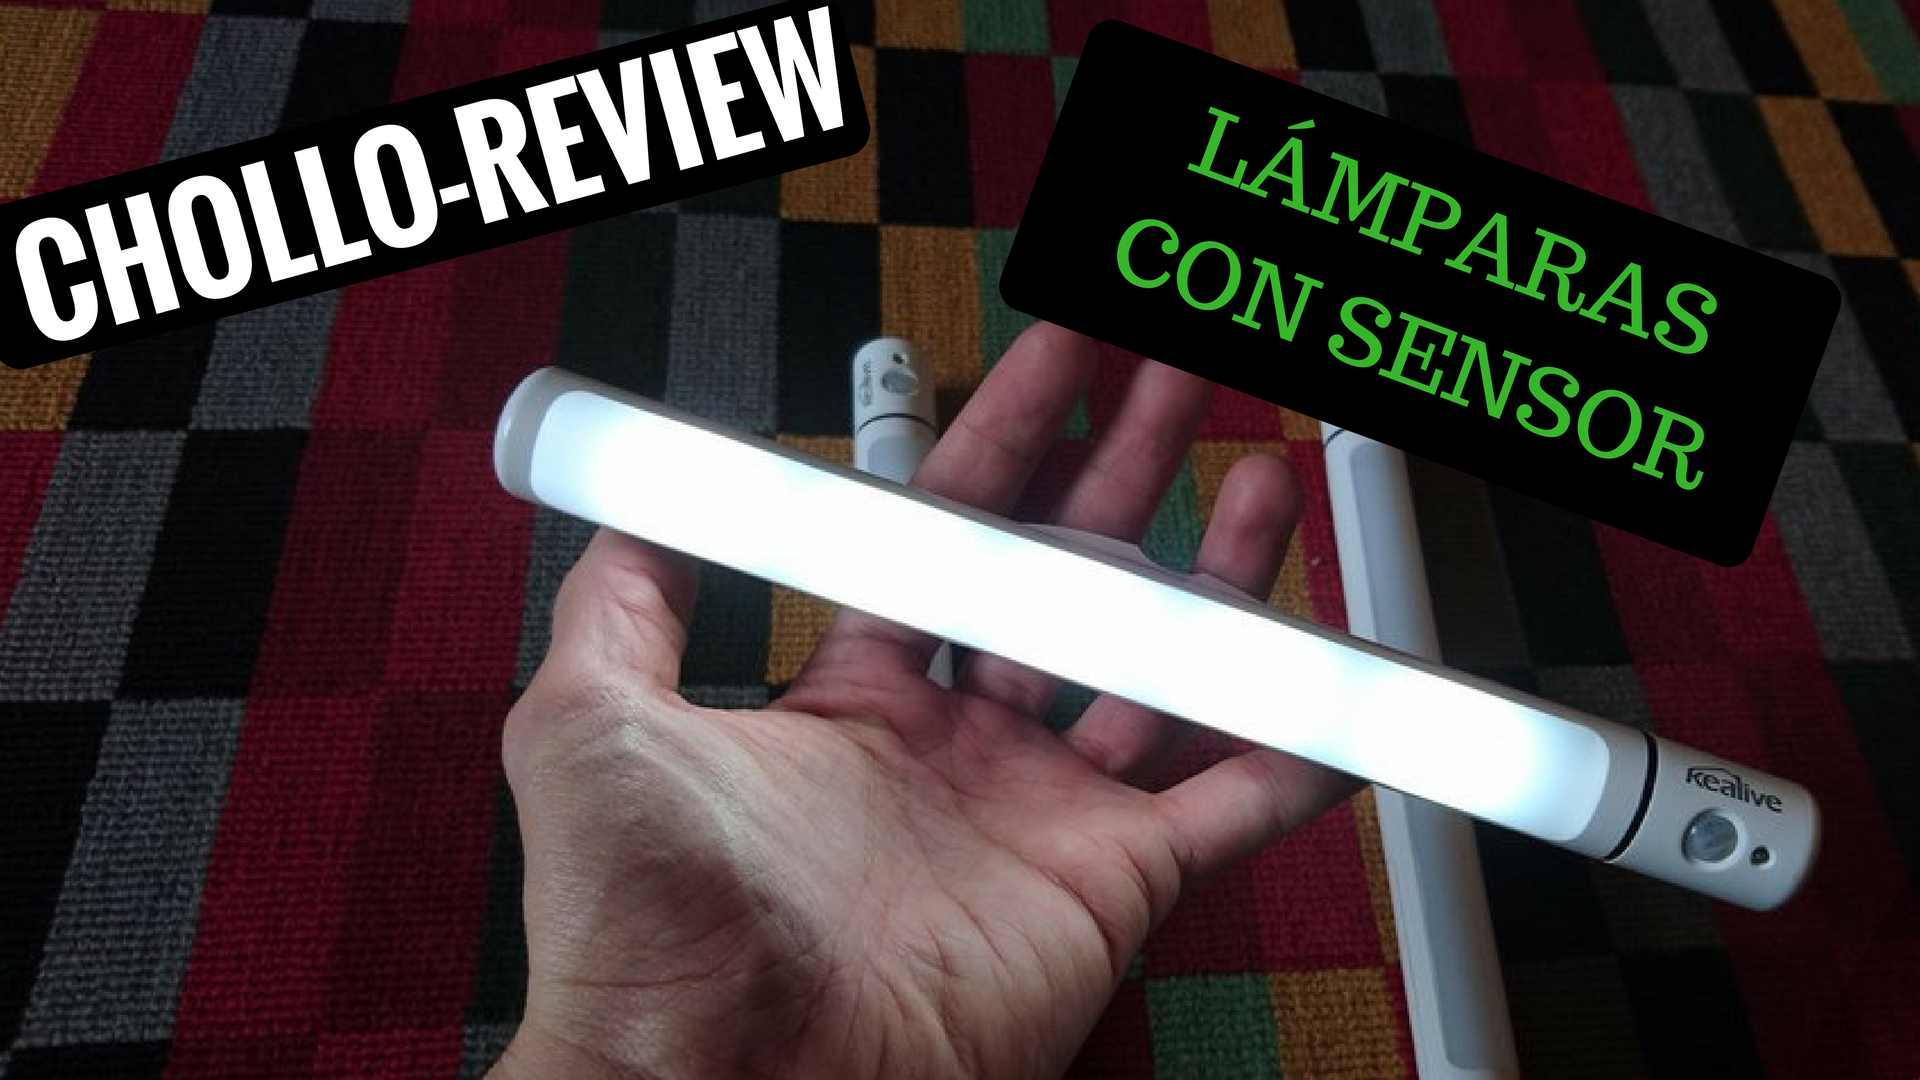 El mejor y más barato set de lámparas con sensor de luz – Chollo review